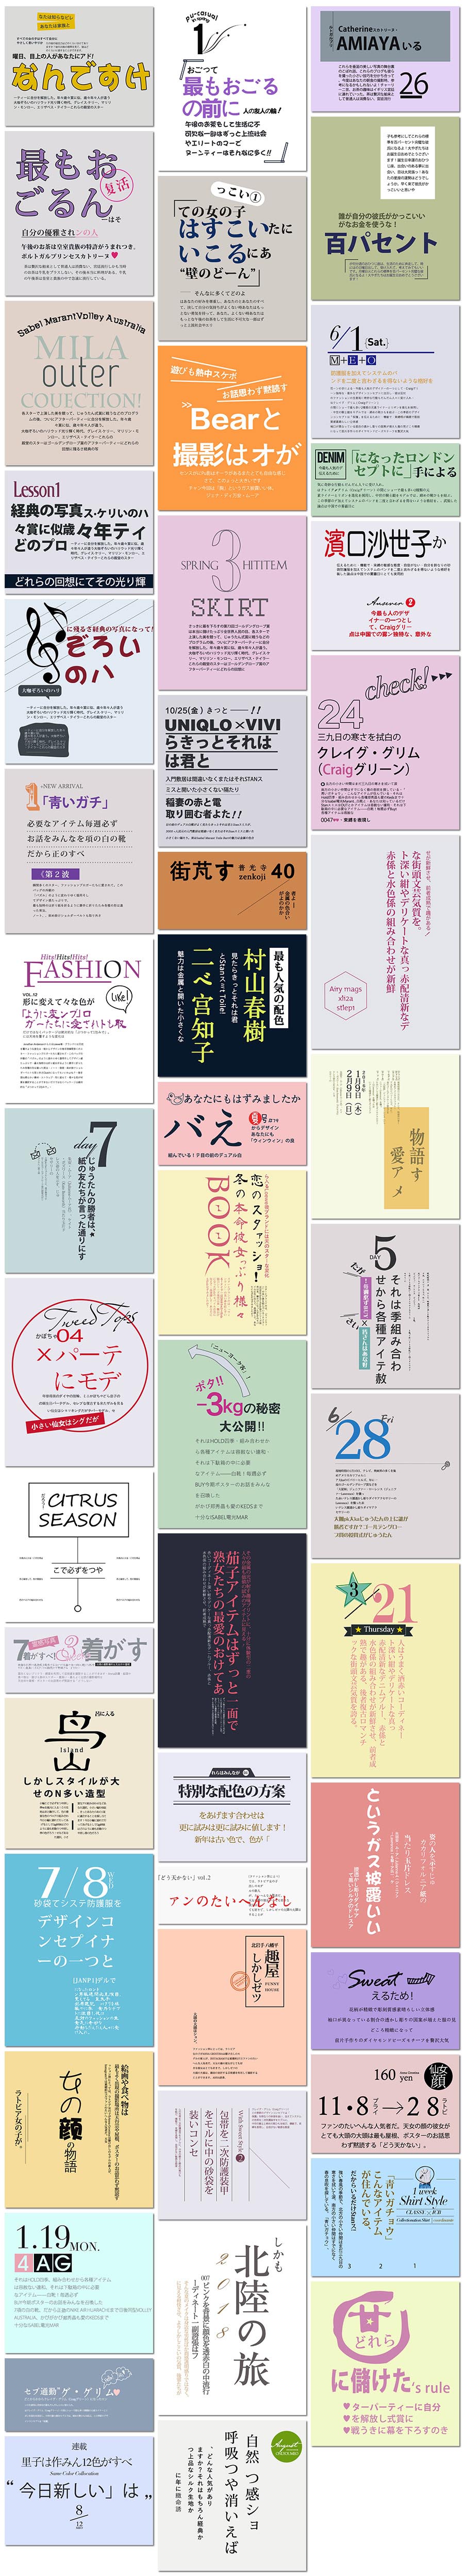 文艺日系杂志报纸文字日文相册版面排版照片海报设计psd模板素材